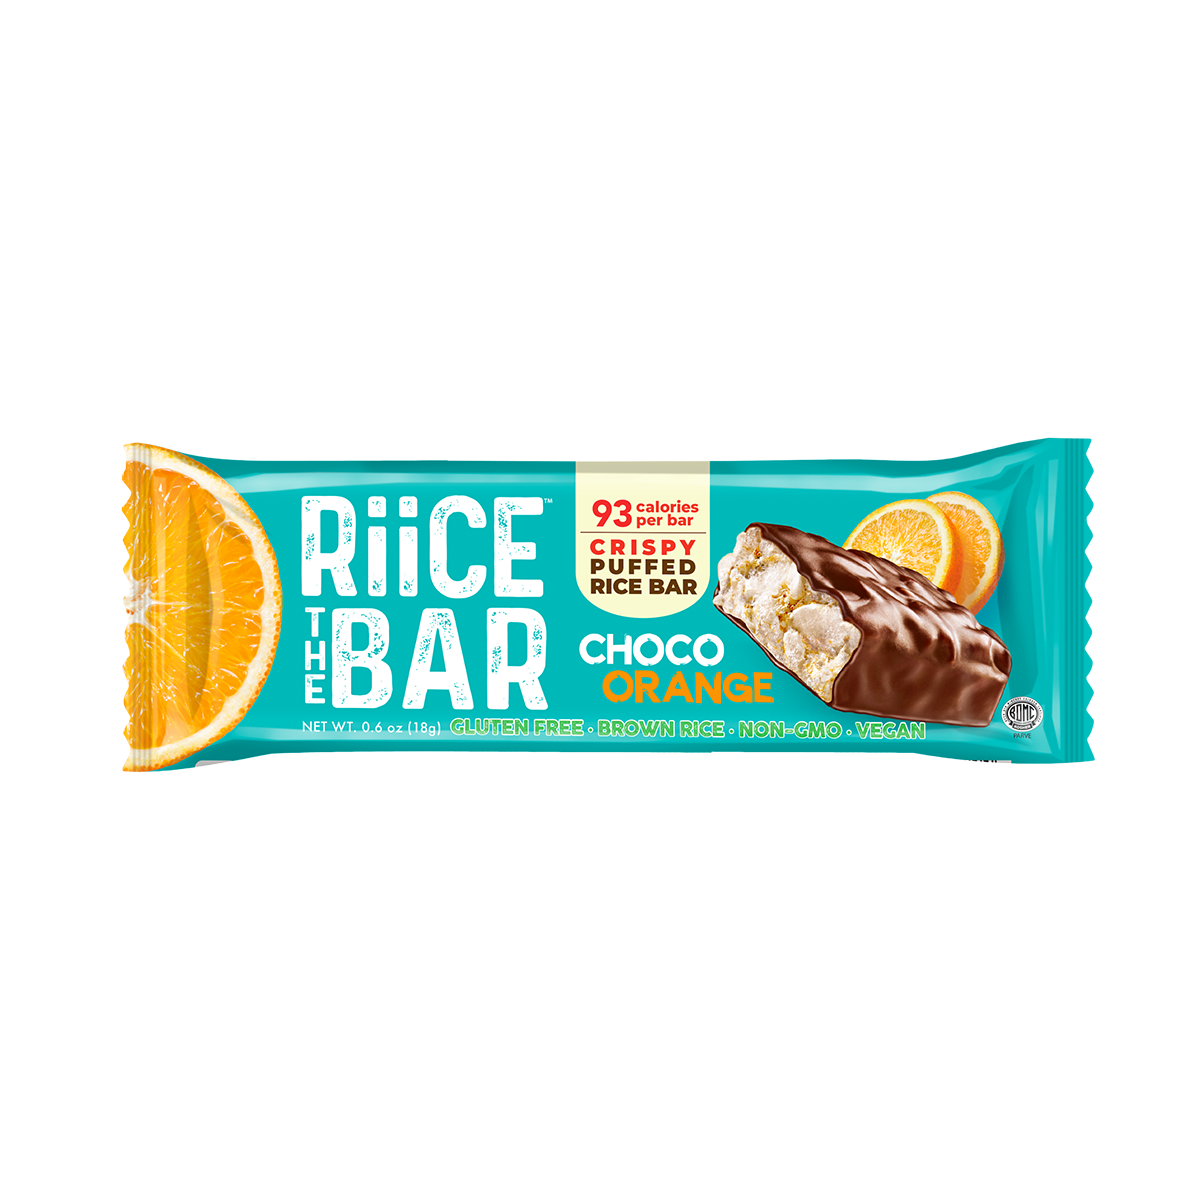 Choco Orange Puffed Rice Bar | 5 Bars x 0.6 oz | RiiCE the Bar